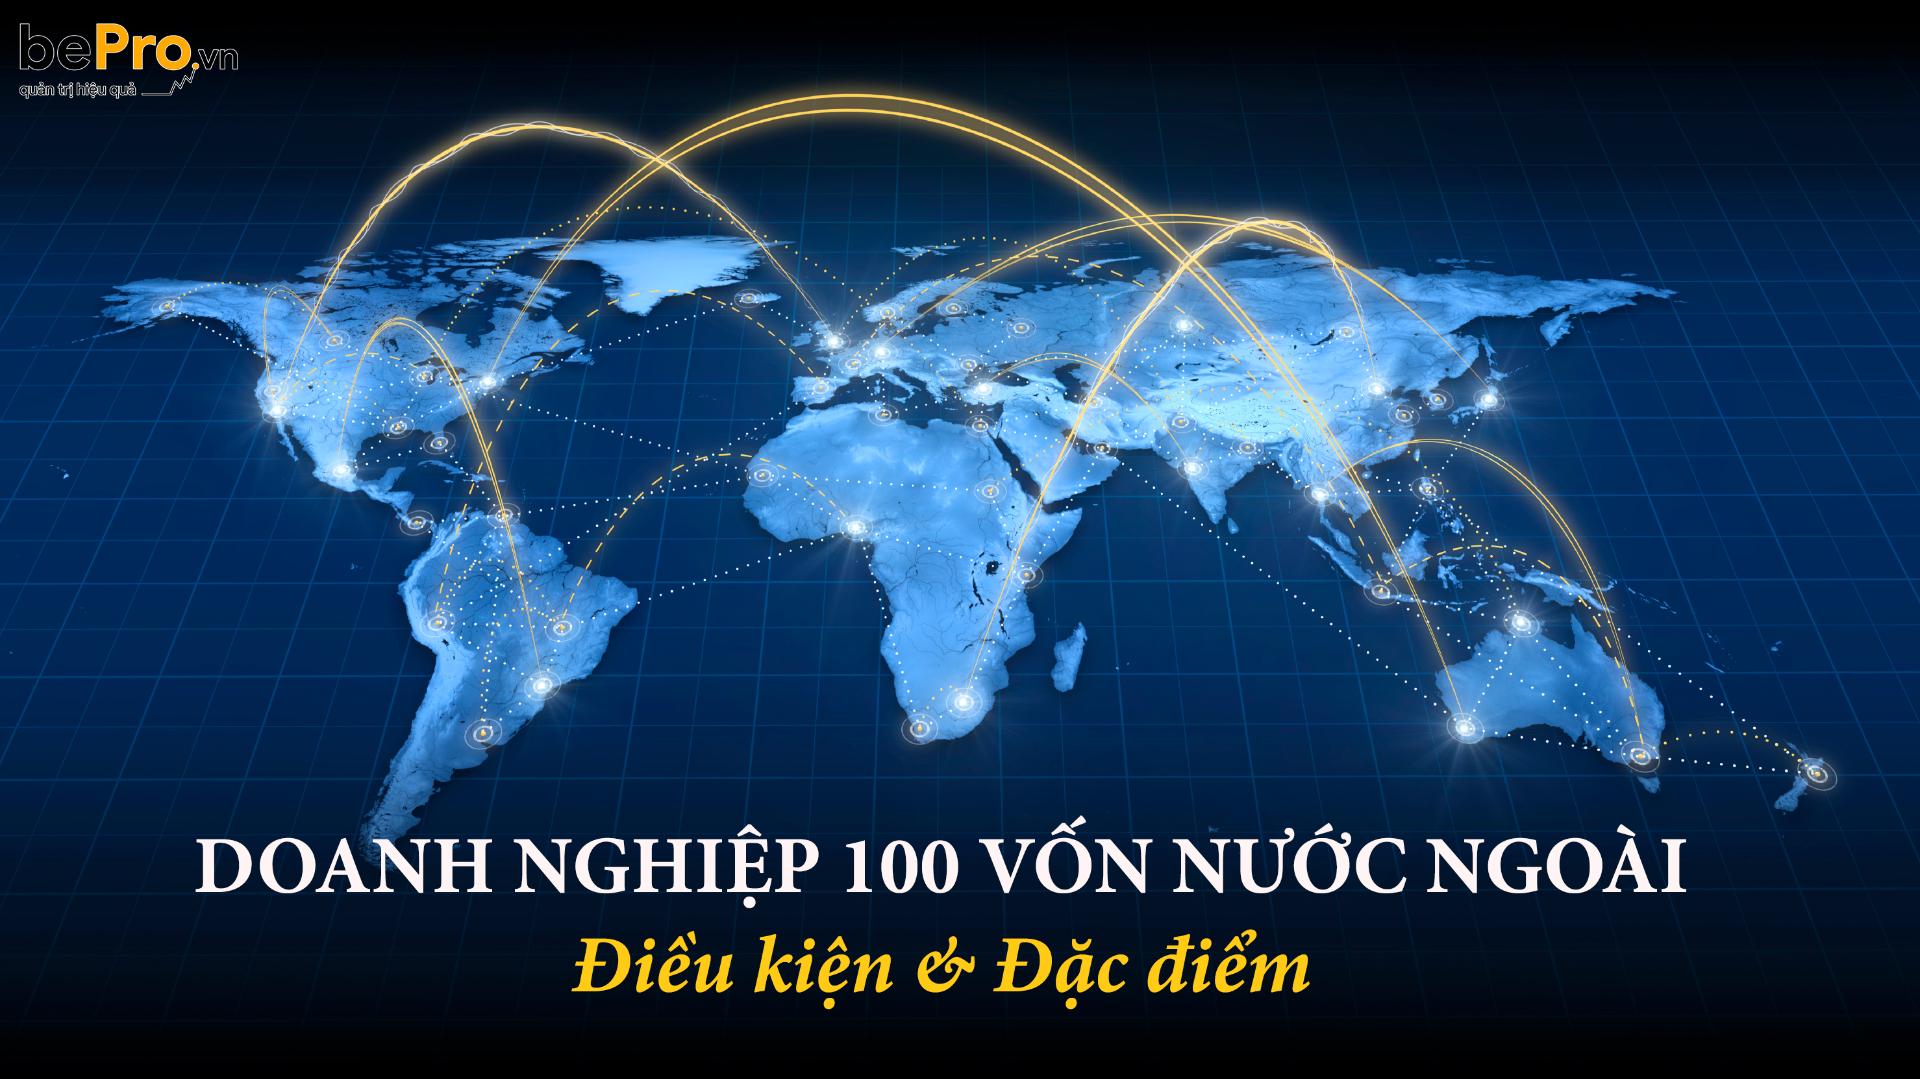 Doanh nghiệp 100 vốn nước ngoài - đặc điểm và điều kiện